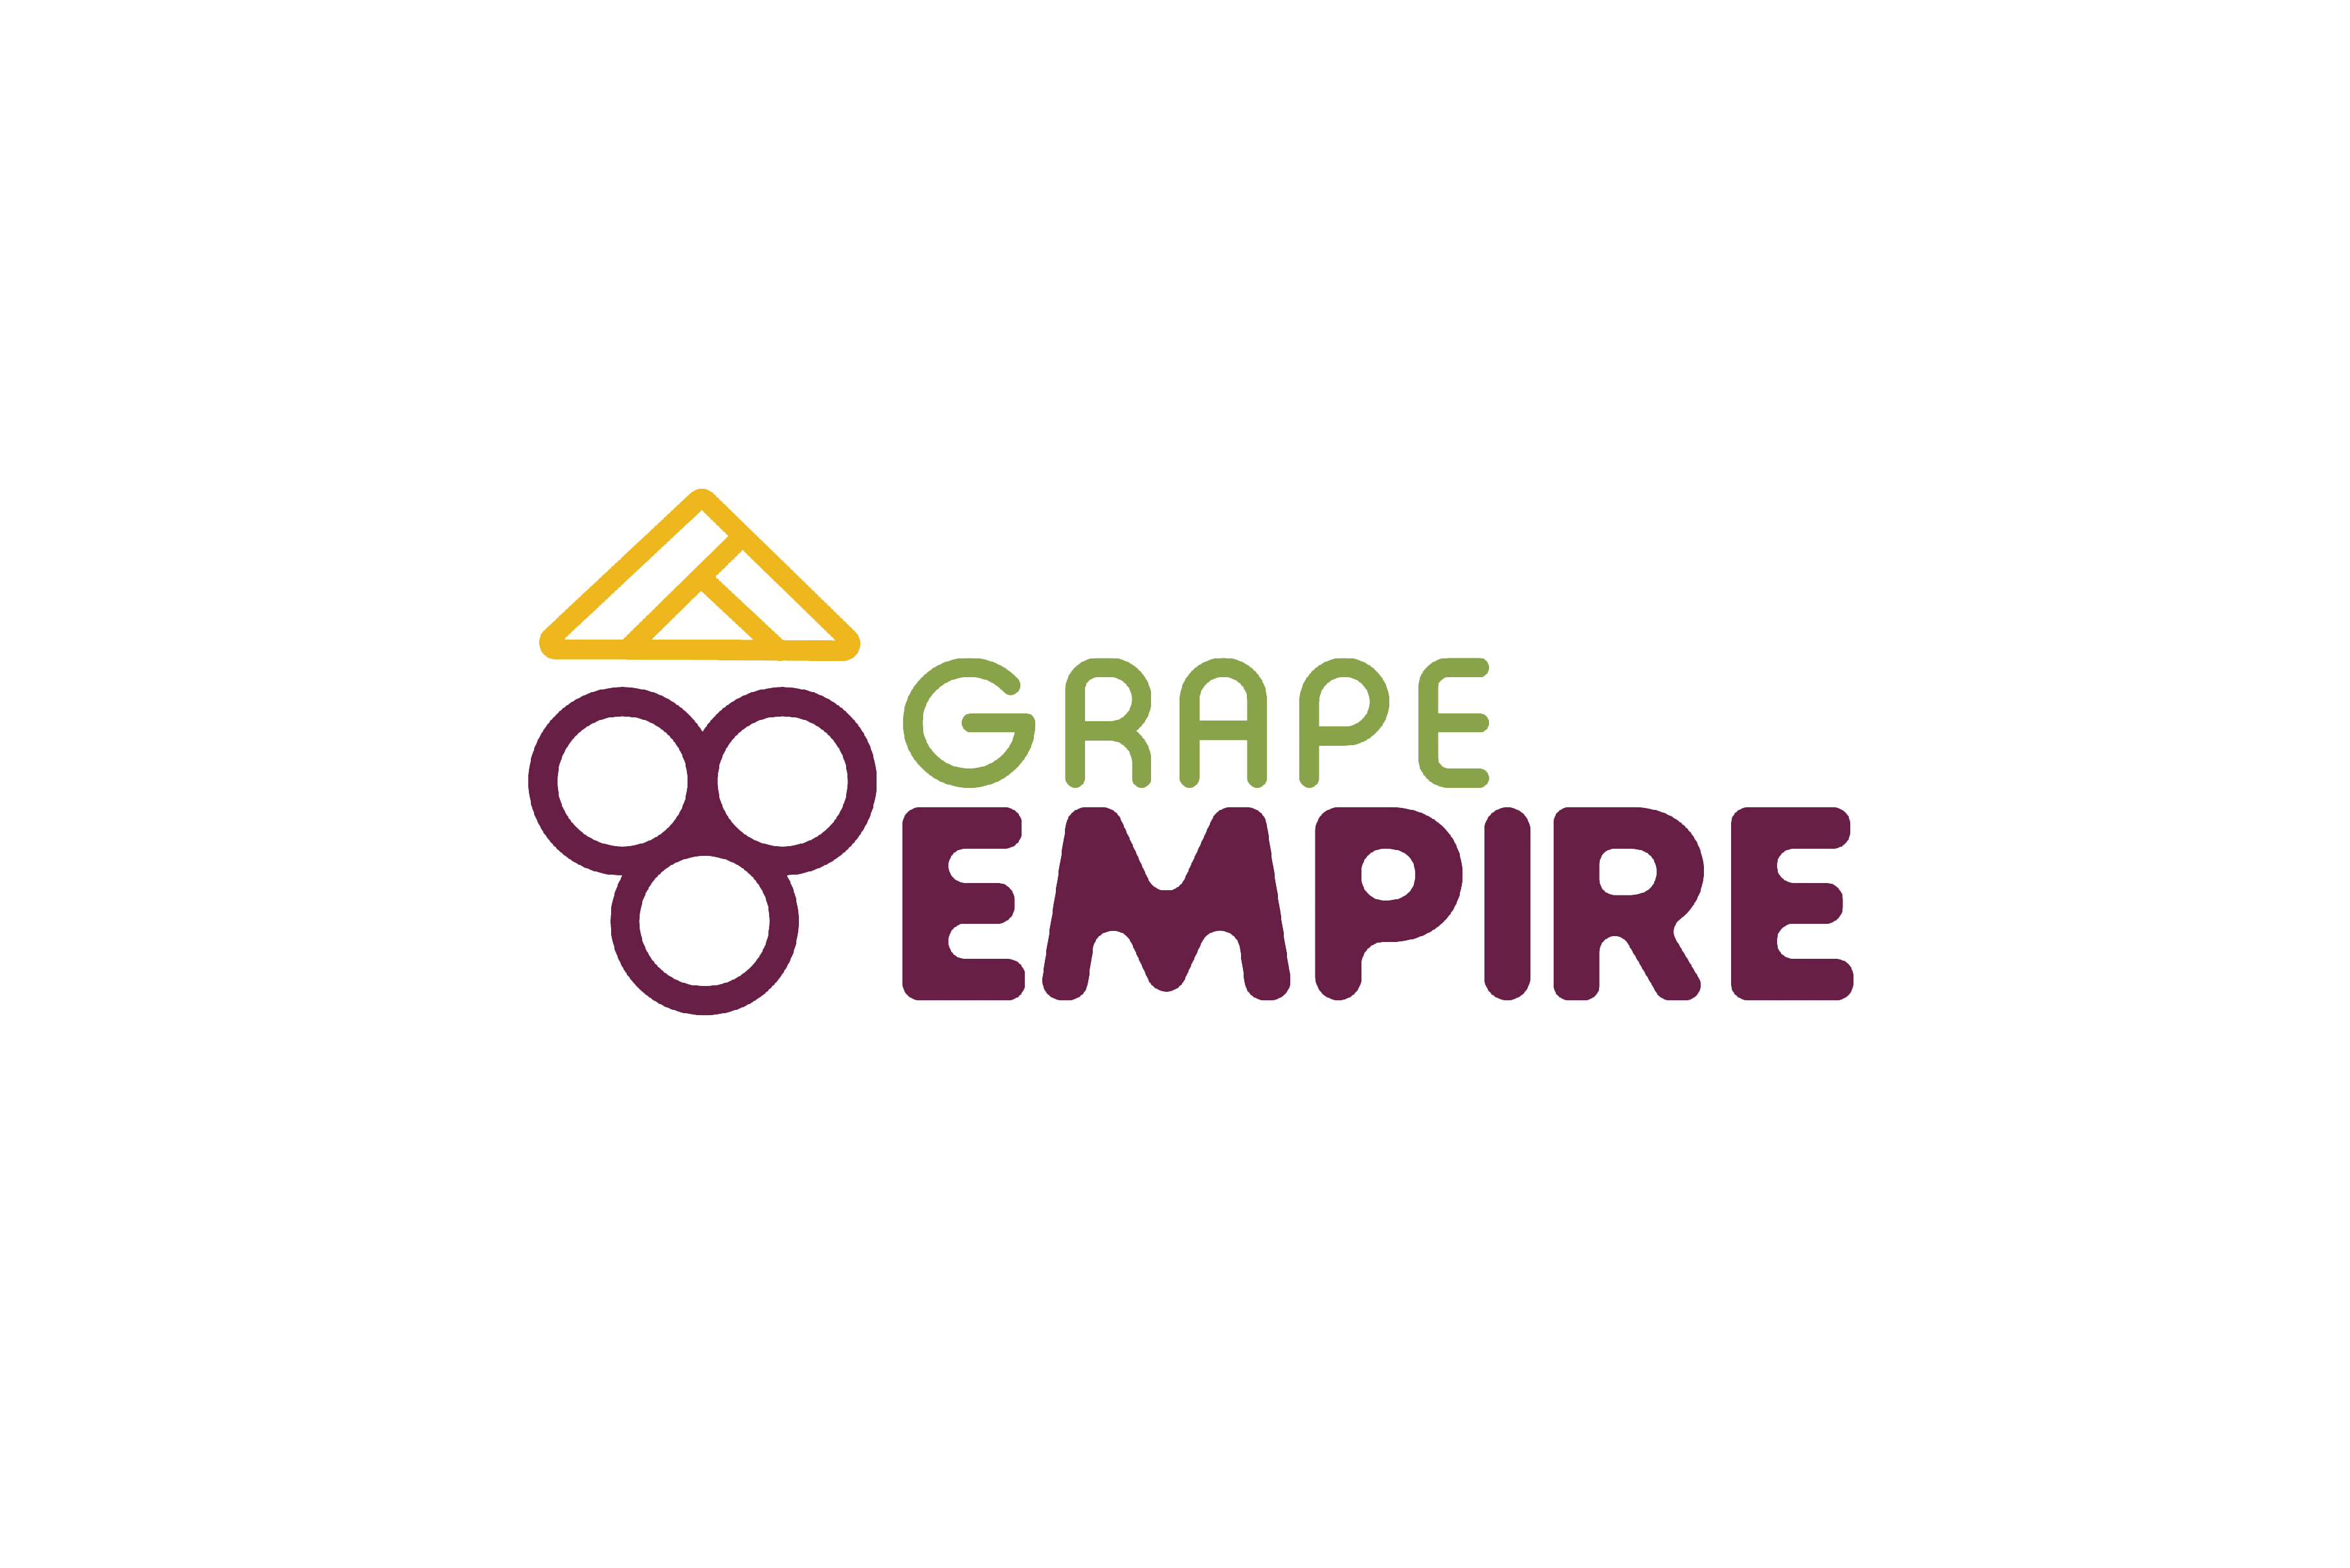 Grape Empire